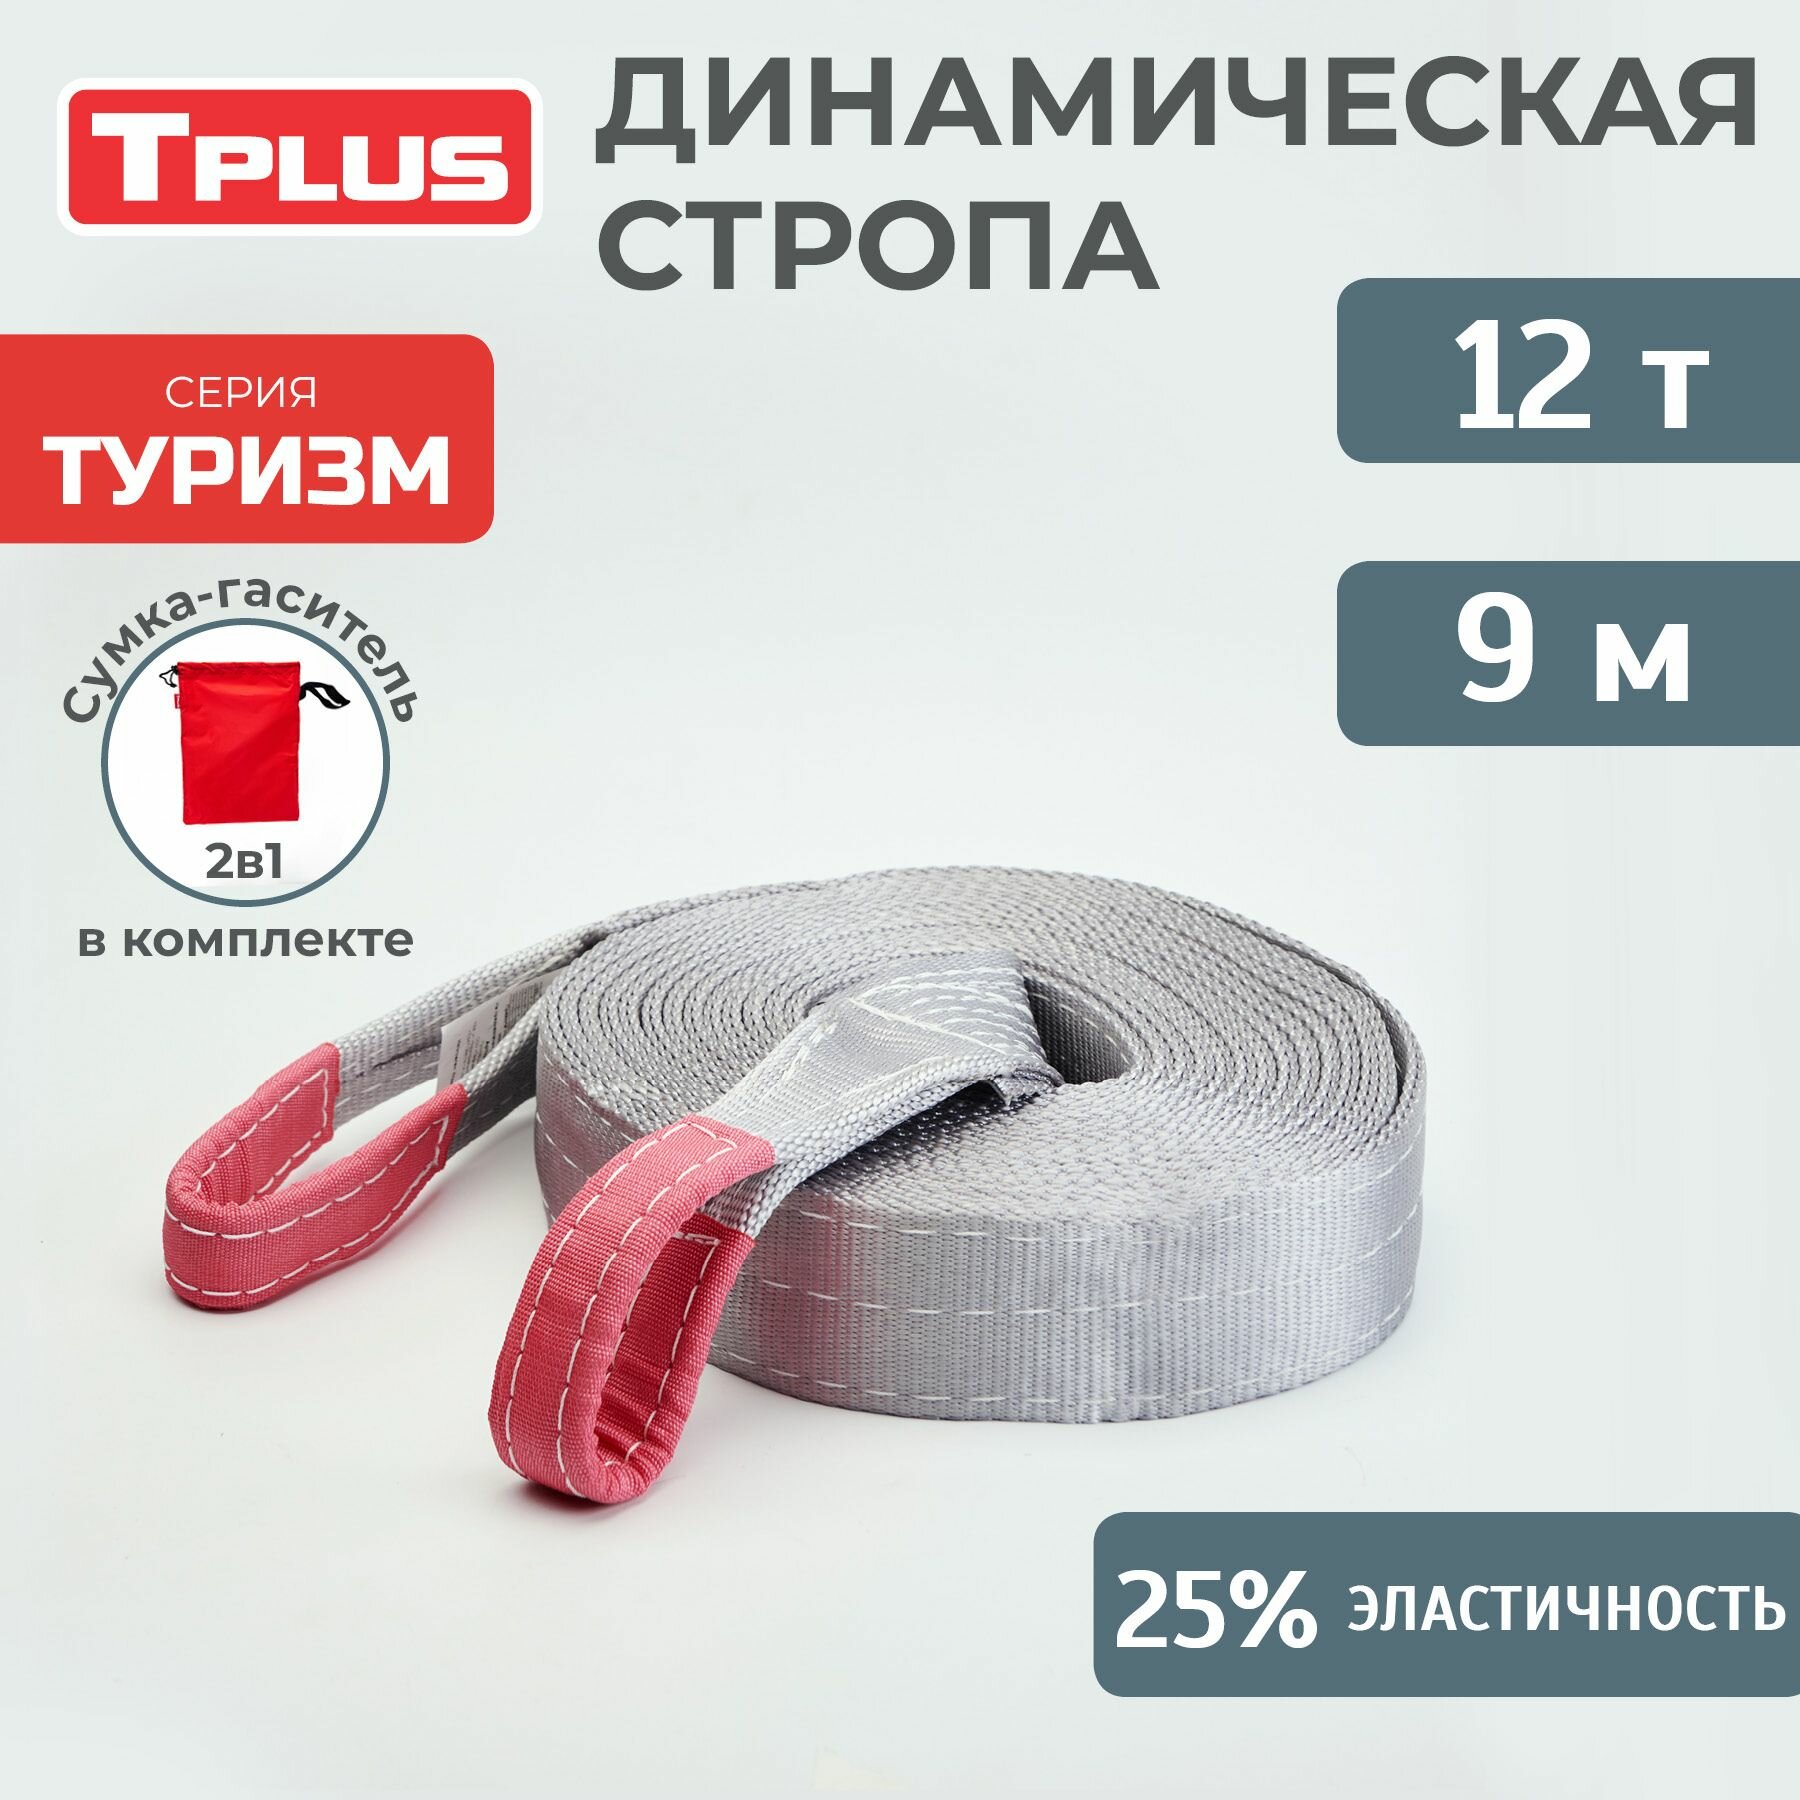 Стропа динамическая рывковая Tplus 12 т/9 м серия "Туризм"